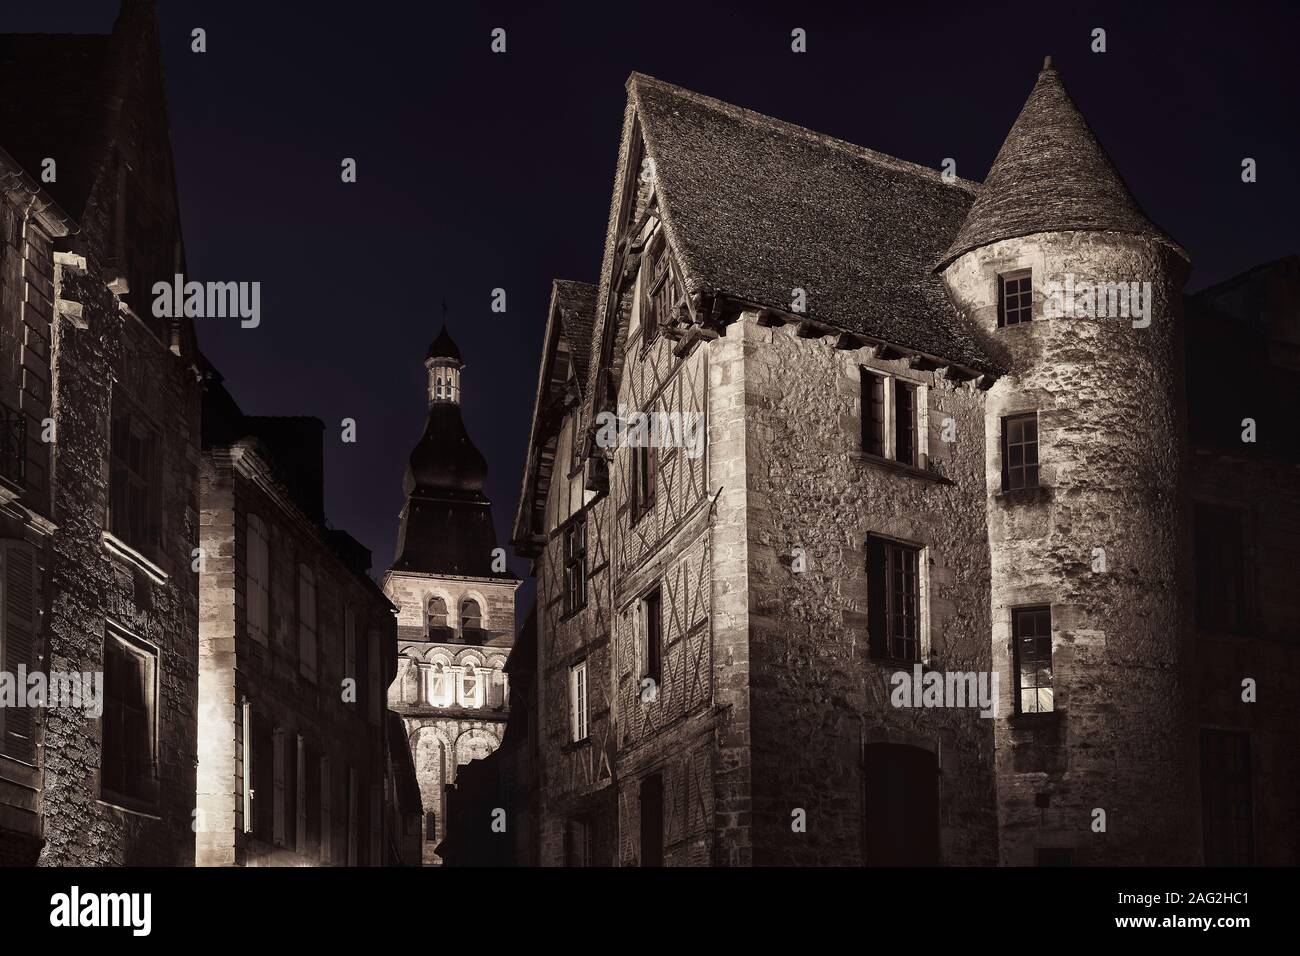 Schmale leere Alte Straße in einer mittelalterlichen Stadt in Frankreich, beleuchtet von einer Straßenlaterne in der Nacht. Dramatische nächtliche Kunst Landschaft. Schwarzweiß, Sepia getont Stockfoto